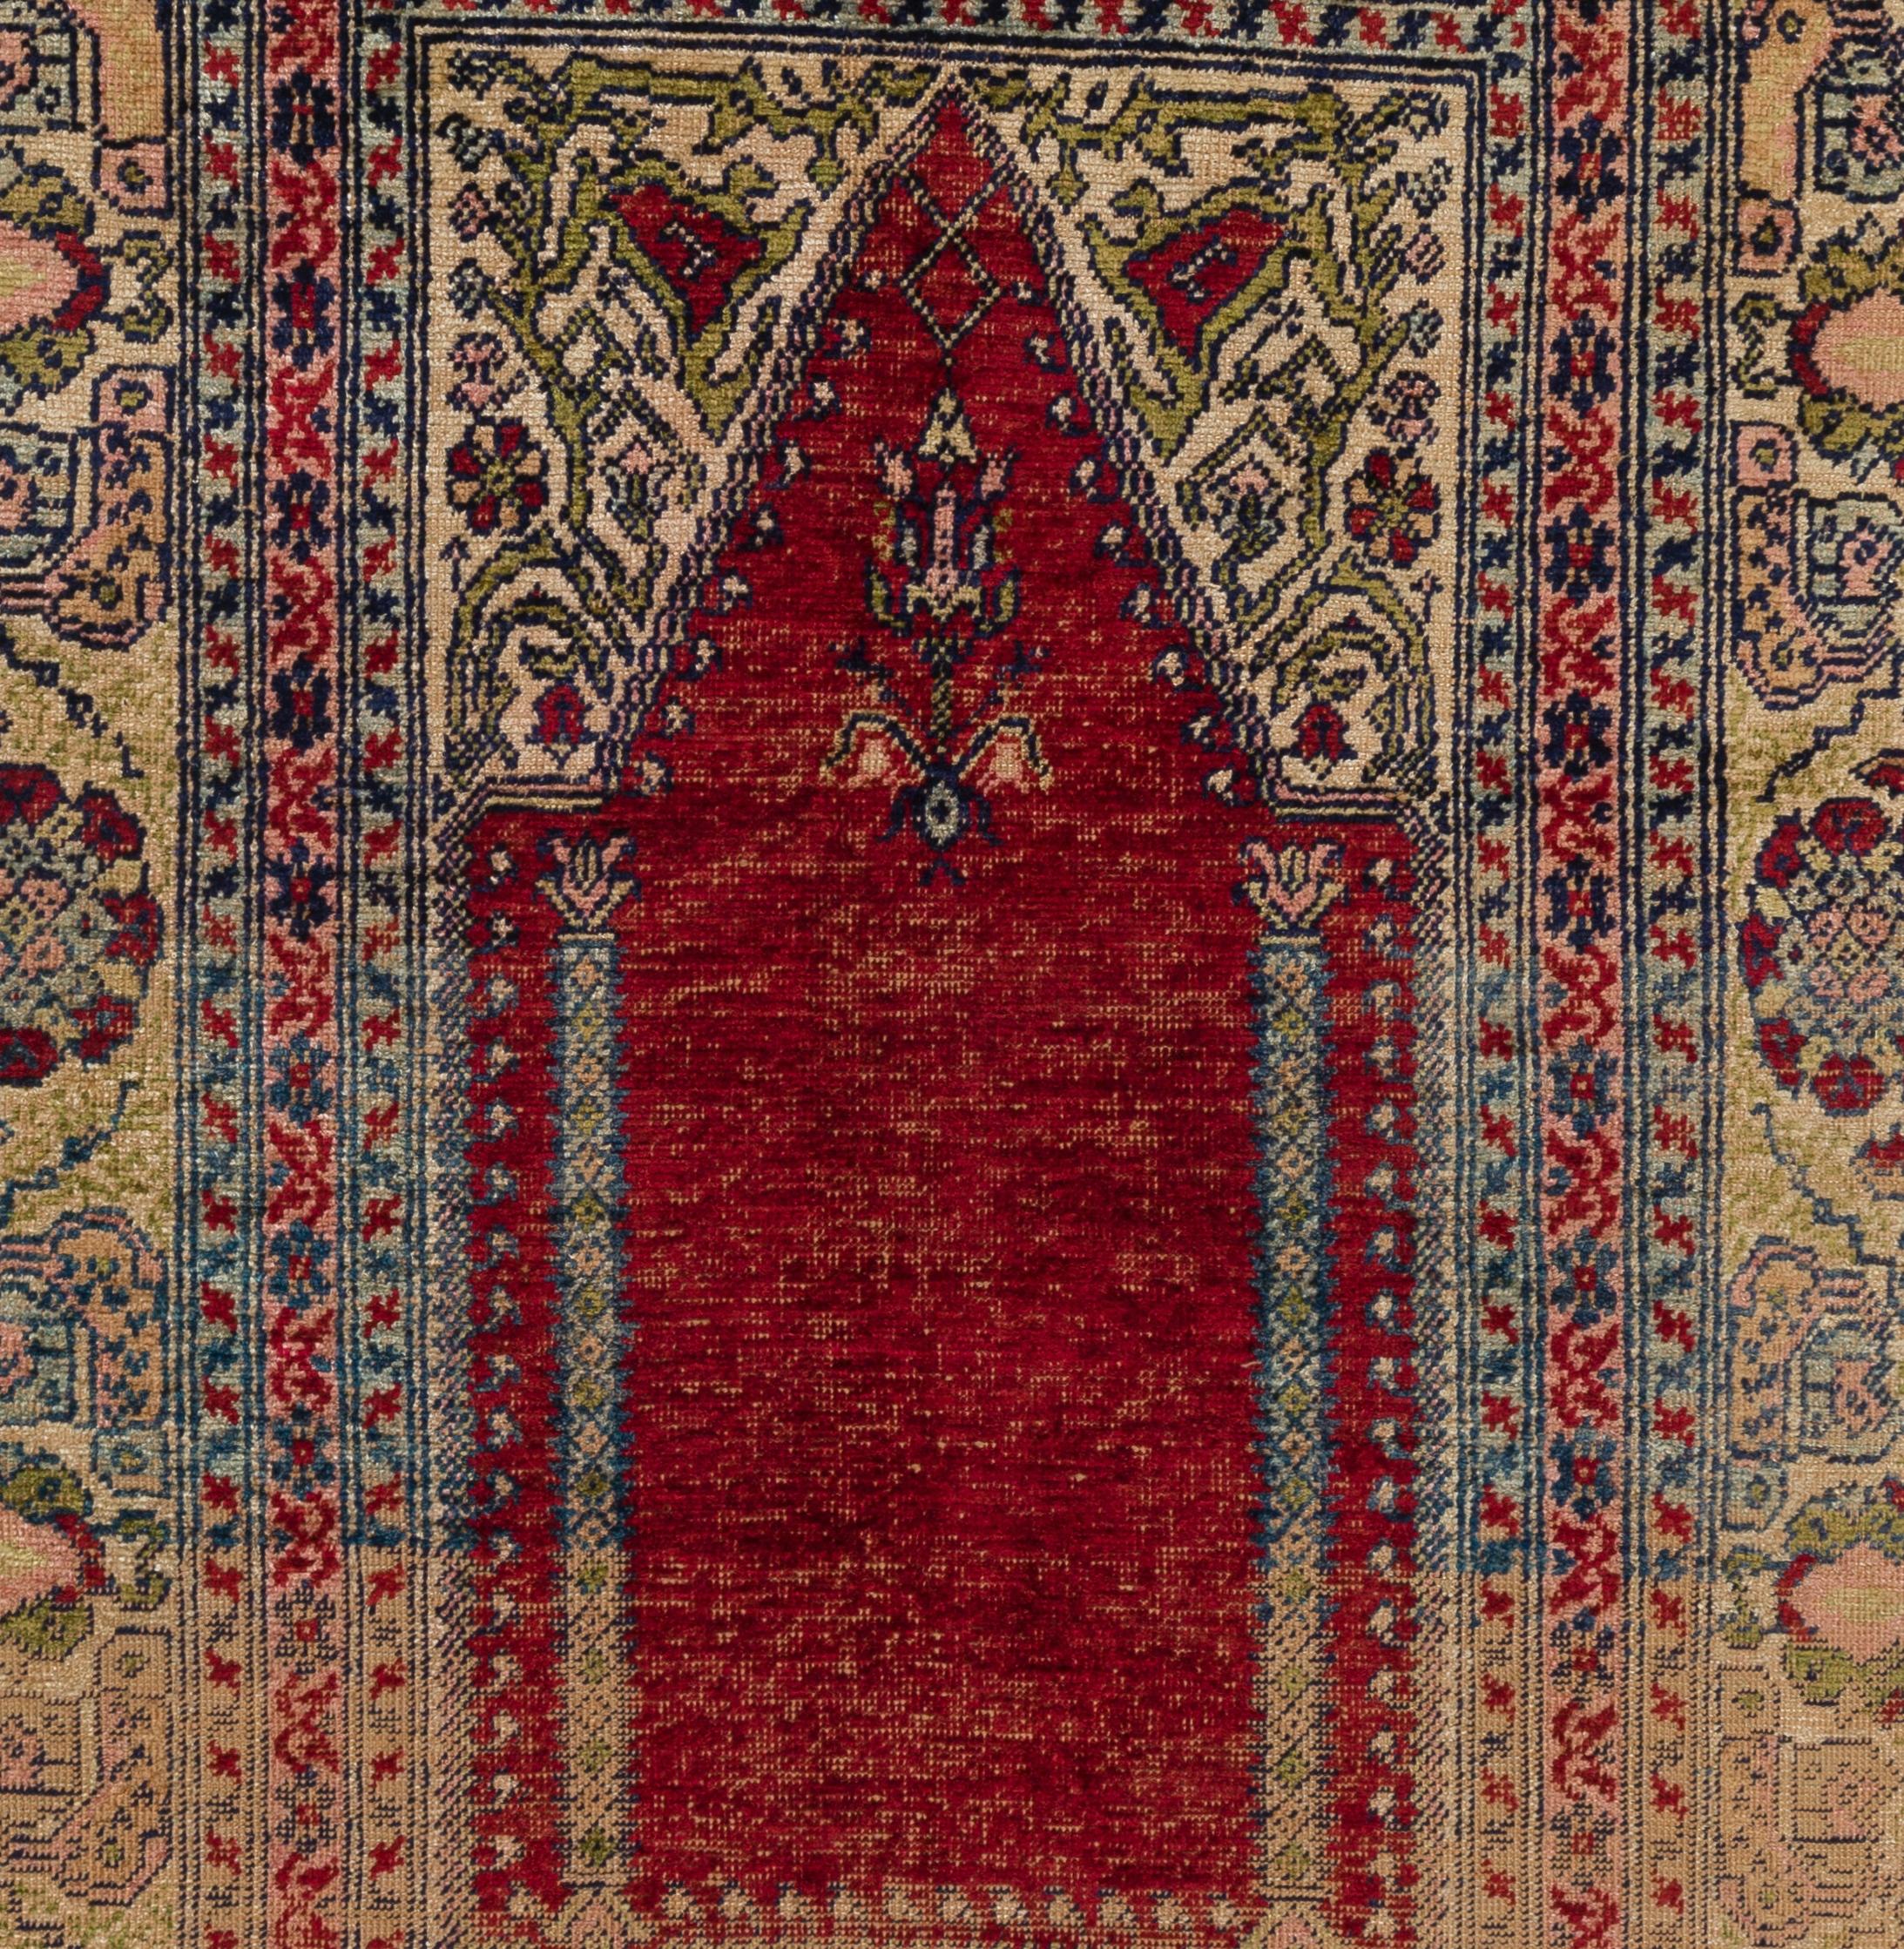 Ein antiker Seidenteppich mit Nischendesign aus der Region Kayseri in Zentralanatolien, um 1910. Sehr guter Zustand. Robust und so sauber wie ein nagelneuer Teppich (professionell tiefgewaschen).
Größe: 3,7 x 5,4 ft.